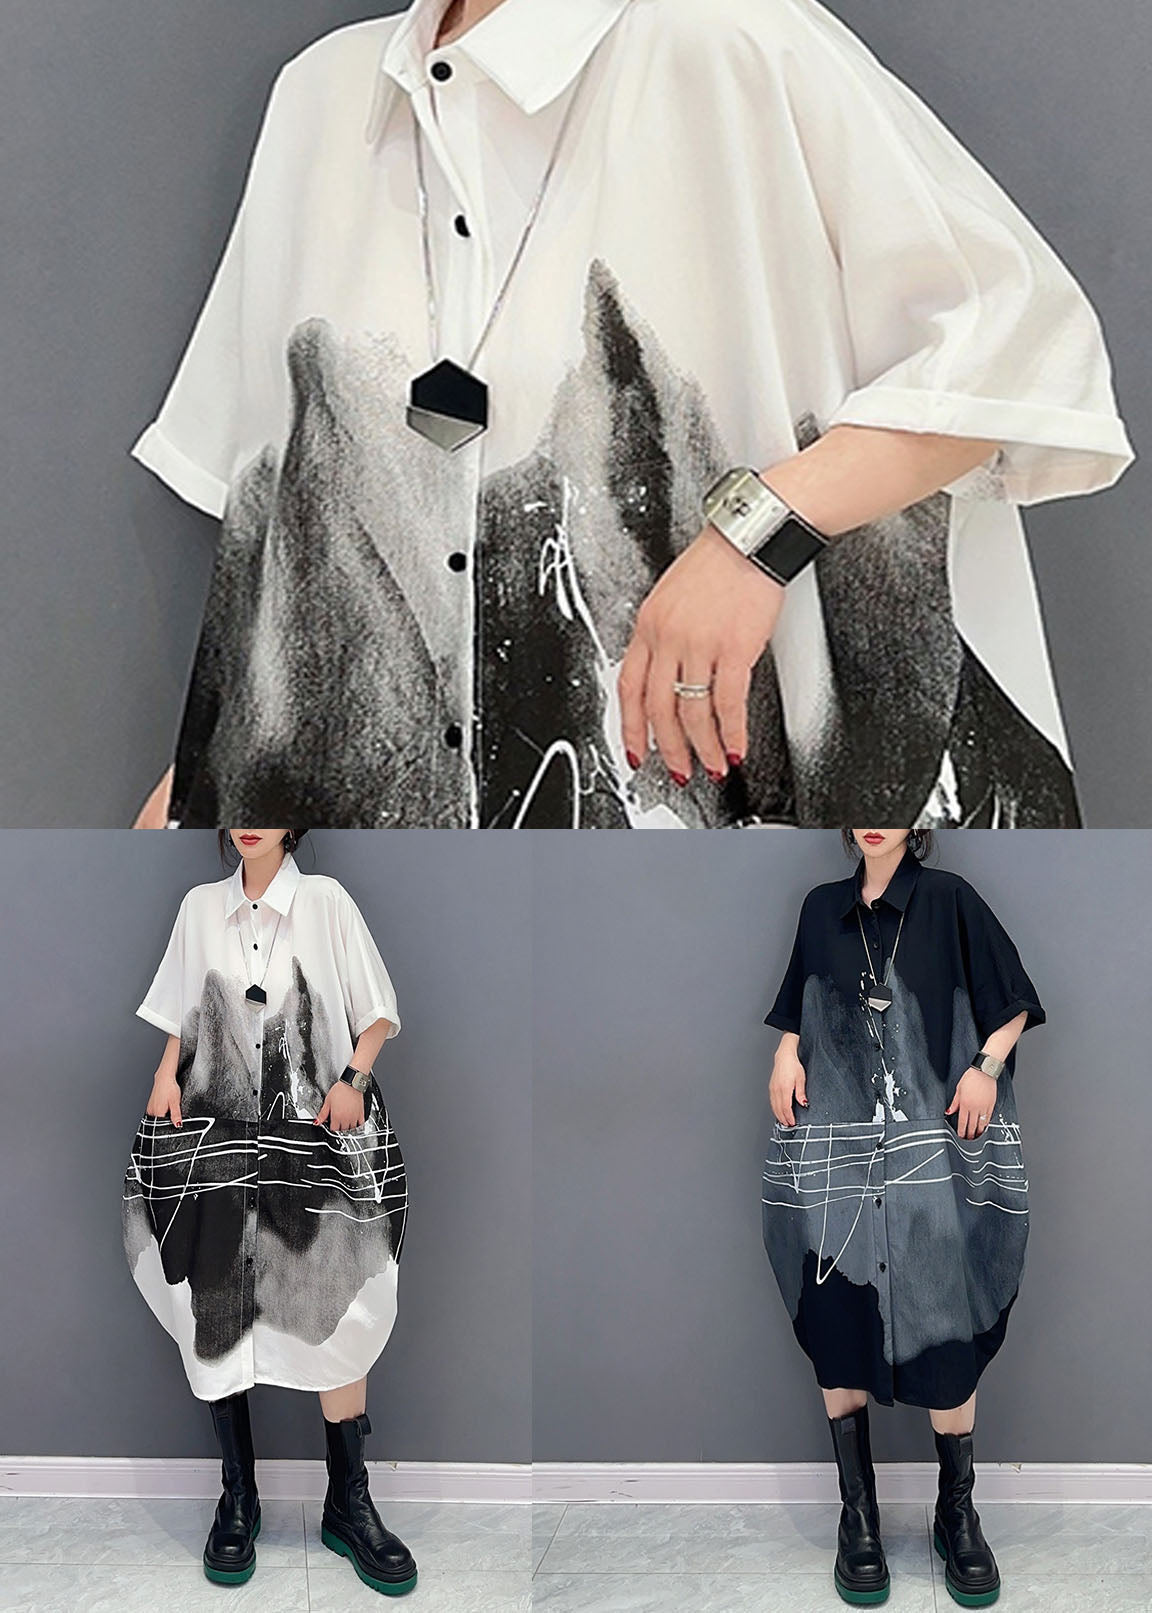 Black Print Patchwork Cotton Shirts Dress Peter Pan Collar Summer LC0331 - fabuloryshop